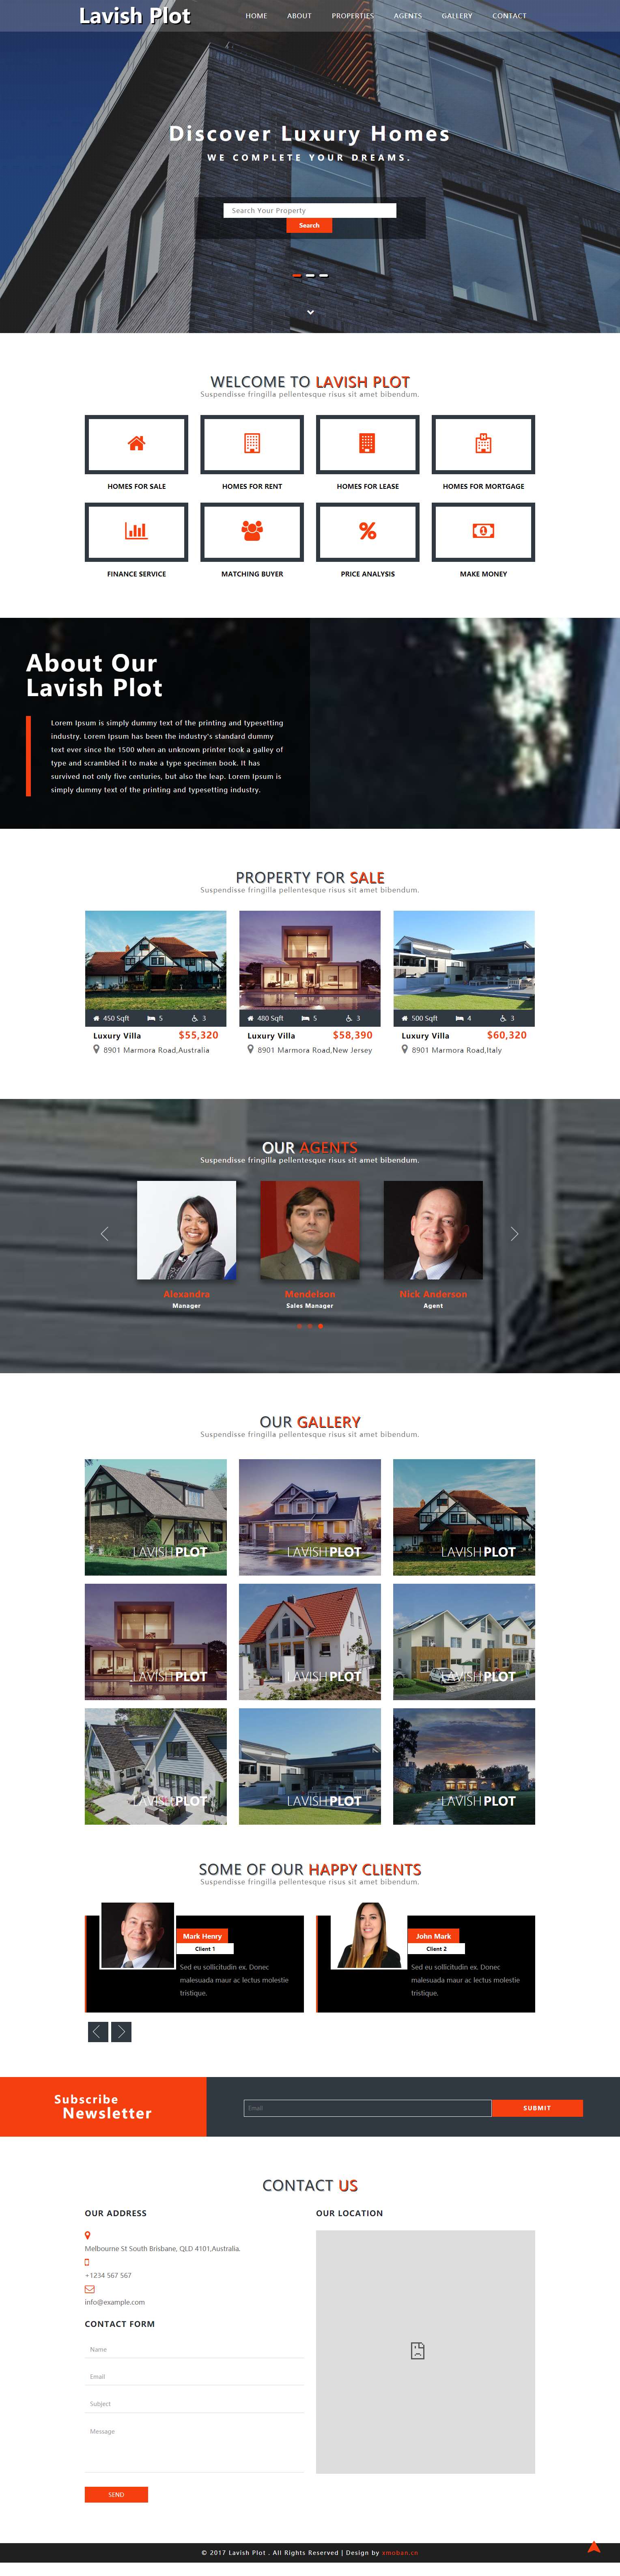 橙色欧美风格的房地产企业网站源码下载